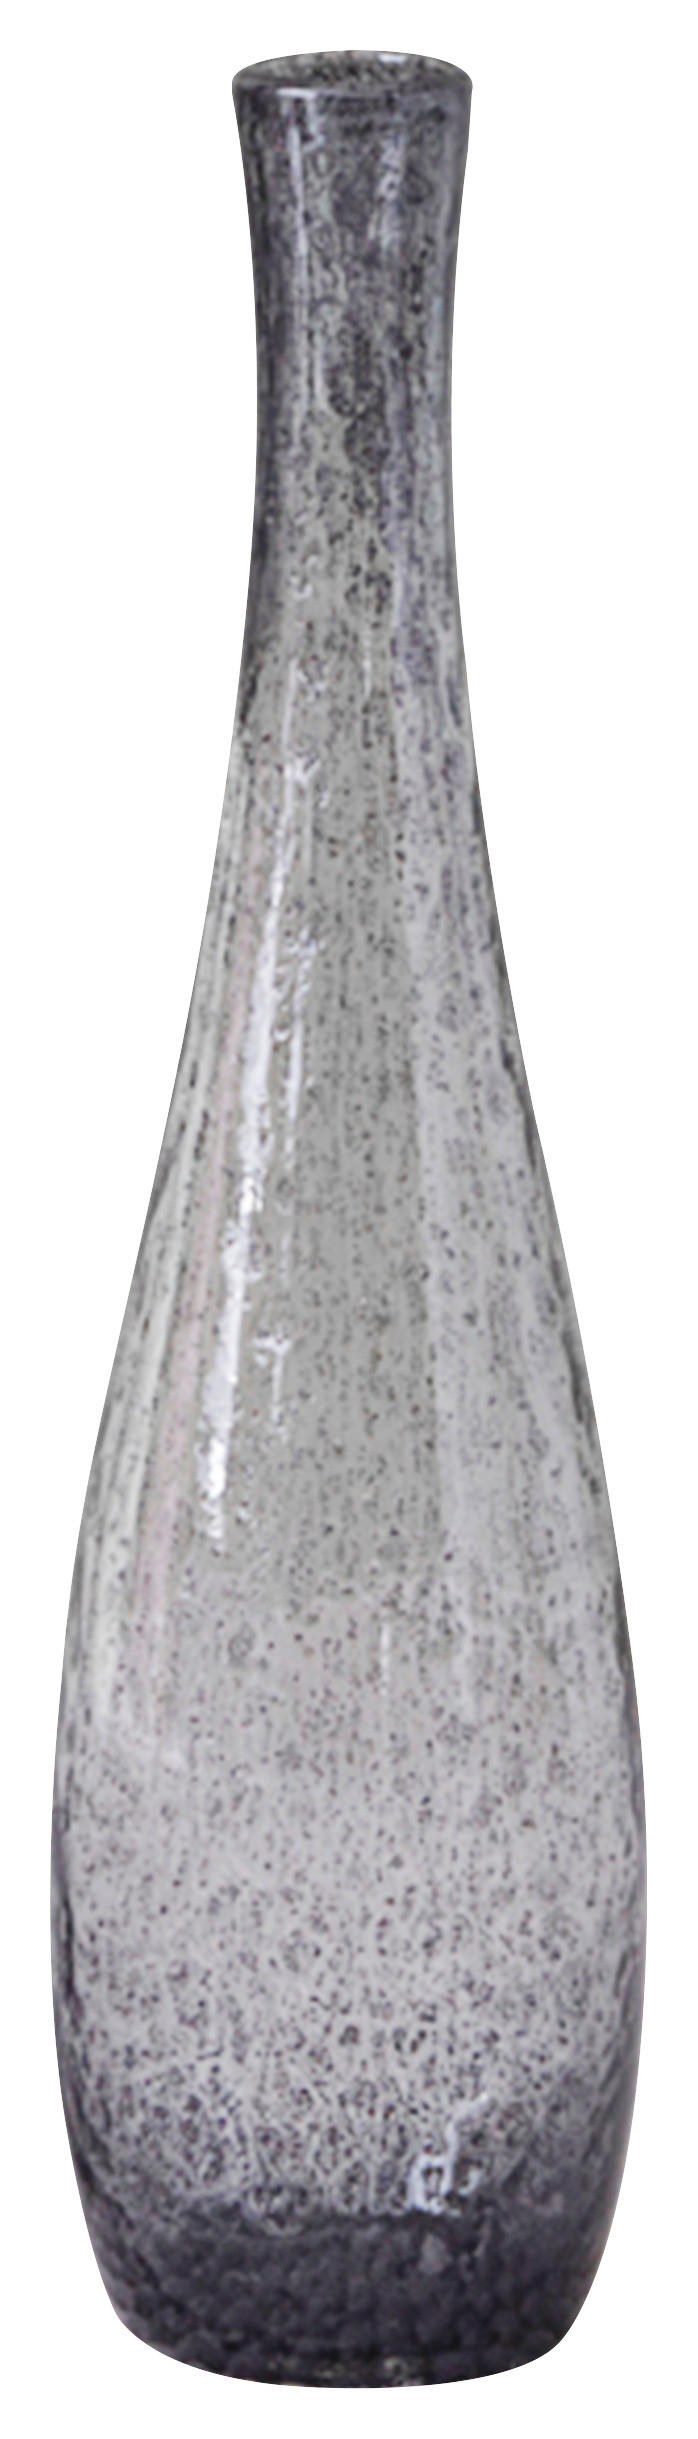 VASE Giardino basalto 40 cm  - Grau, Design, Glas (40cm) - Leonardo